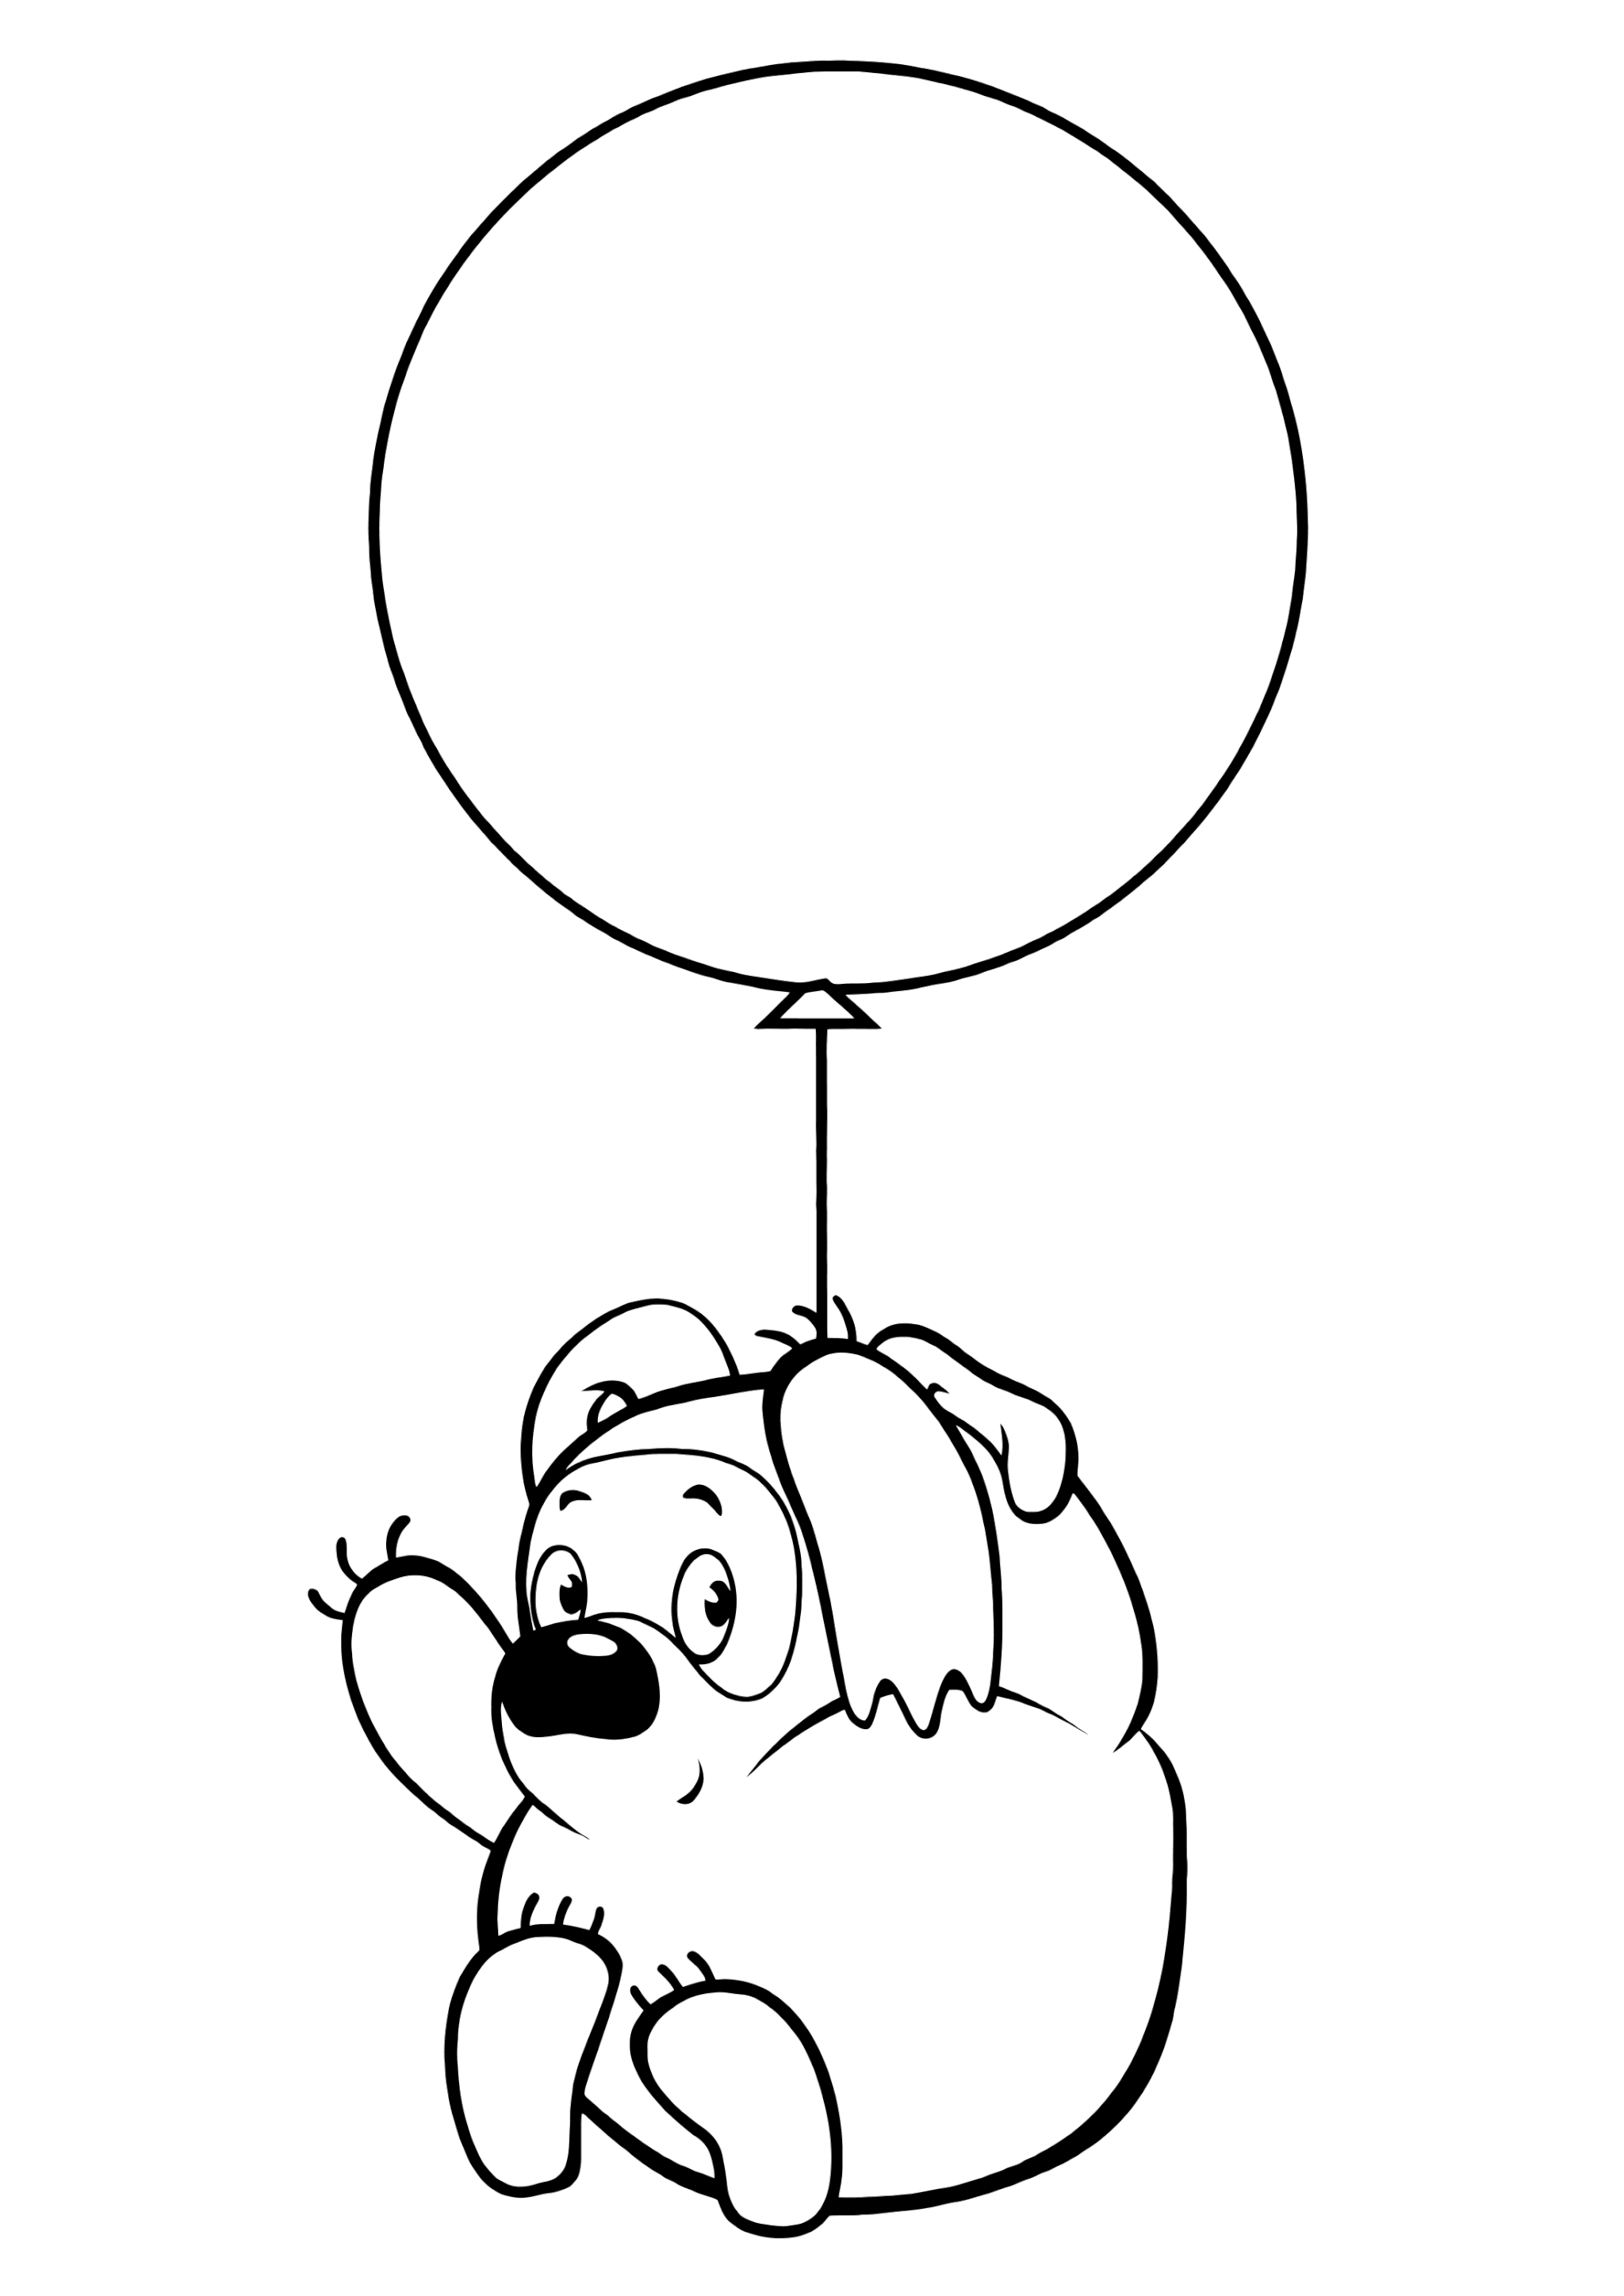 Раскраска Винни Пух на воздушном шаре